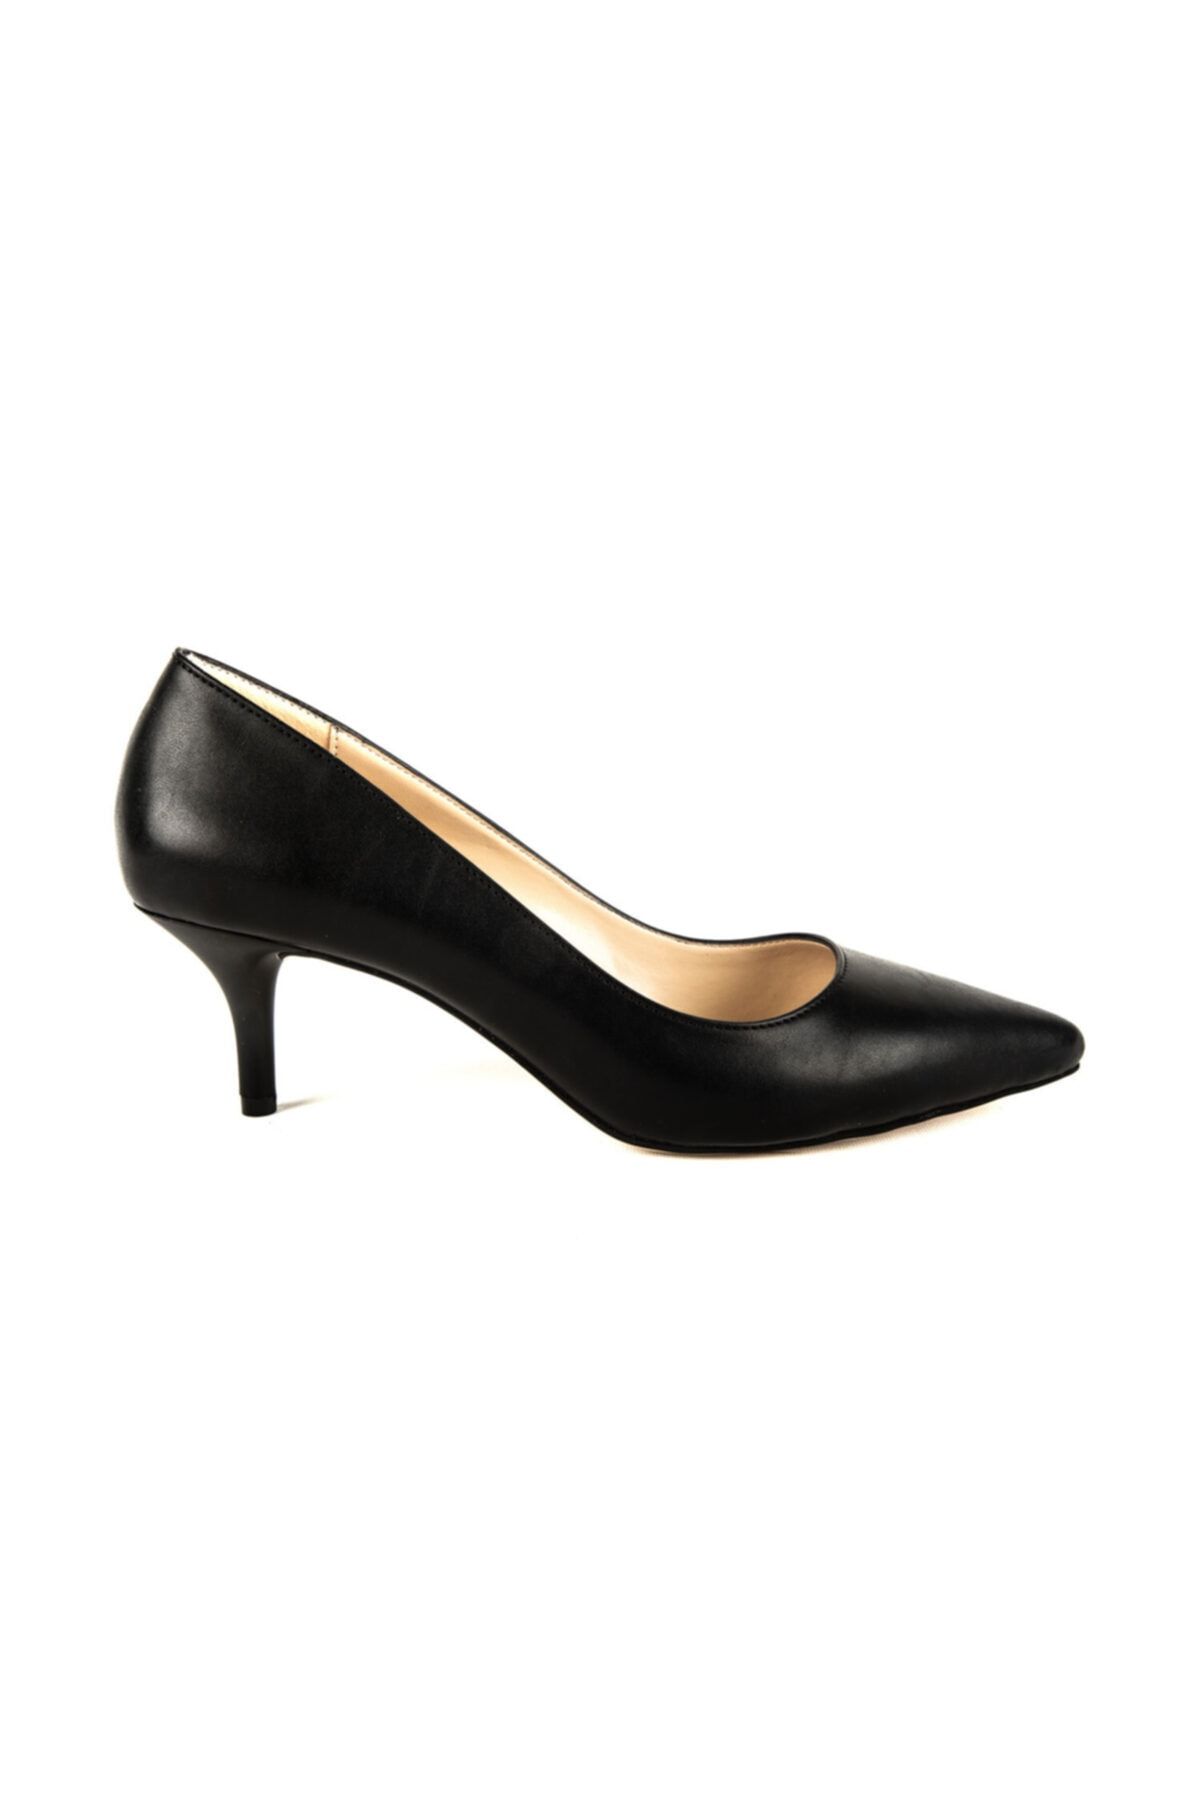 Divum Kadın Siyah Topuklu Ayakkabı